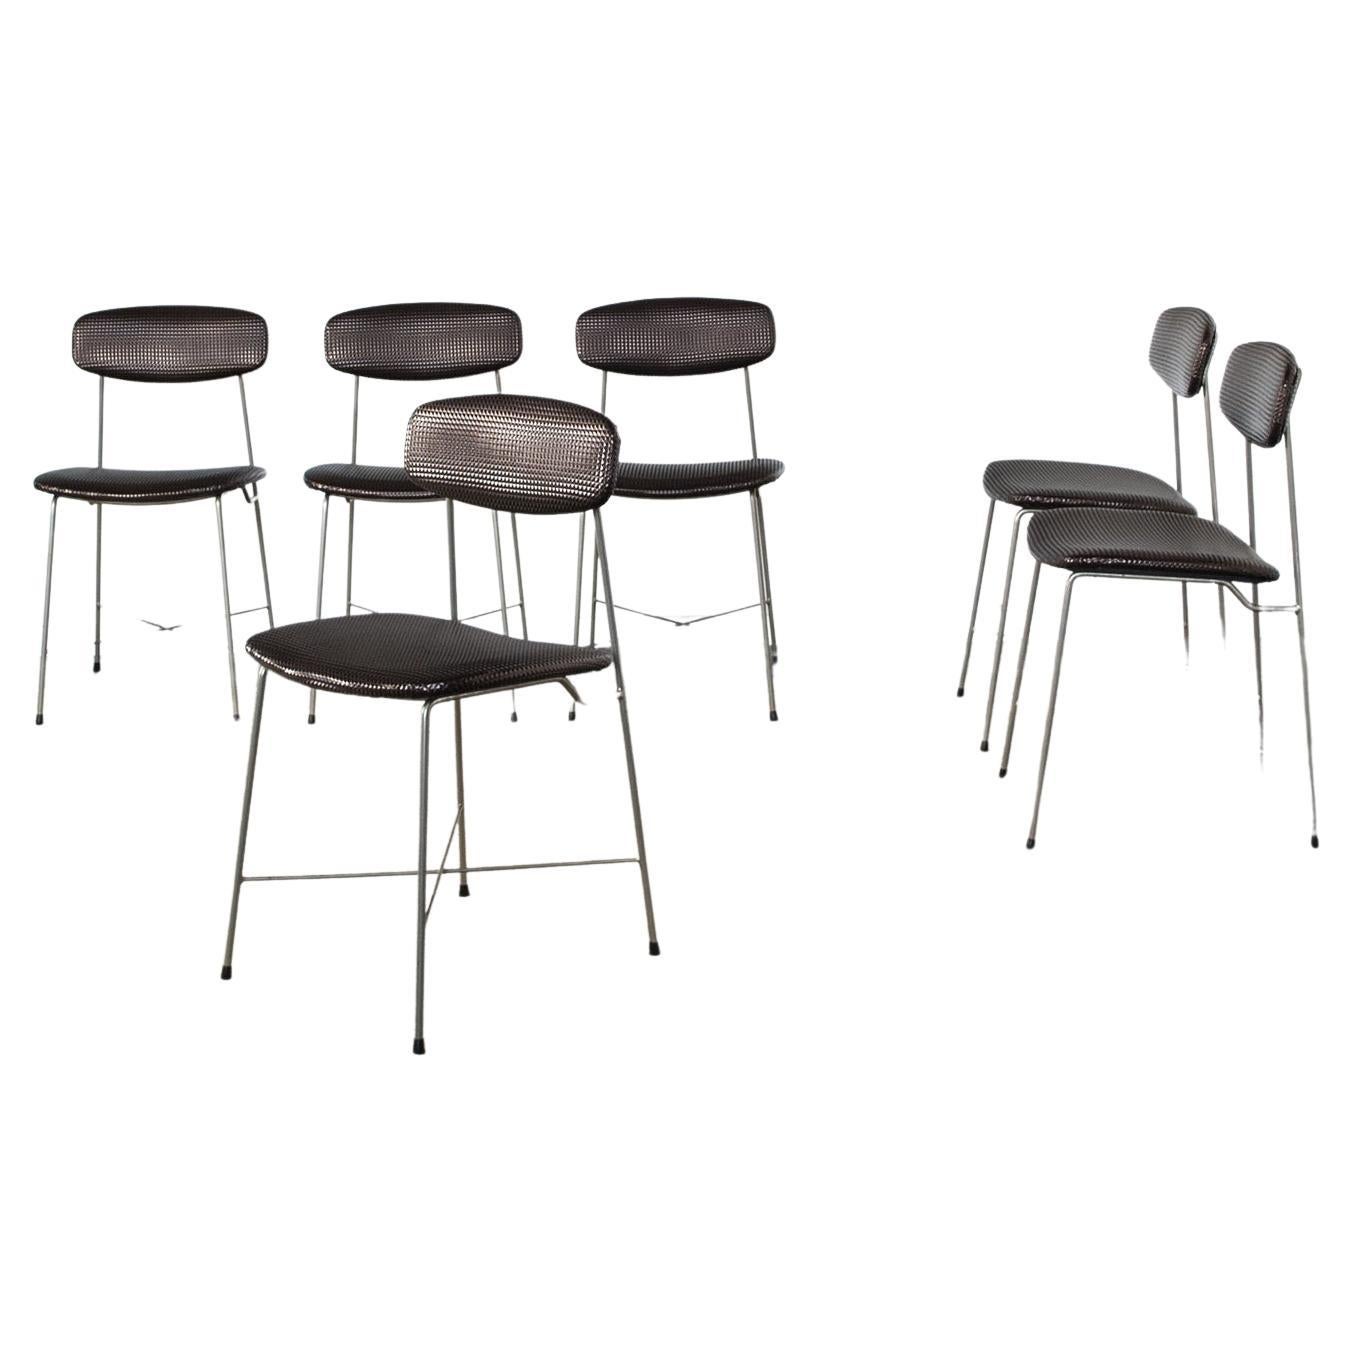 Ensemble de six chaises à structure en fer incurvée assise en tissu synthétique designer George Coslin production Faram années 1960

.